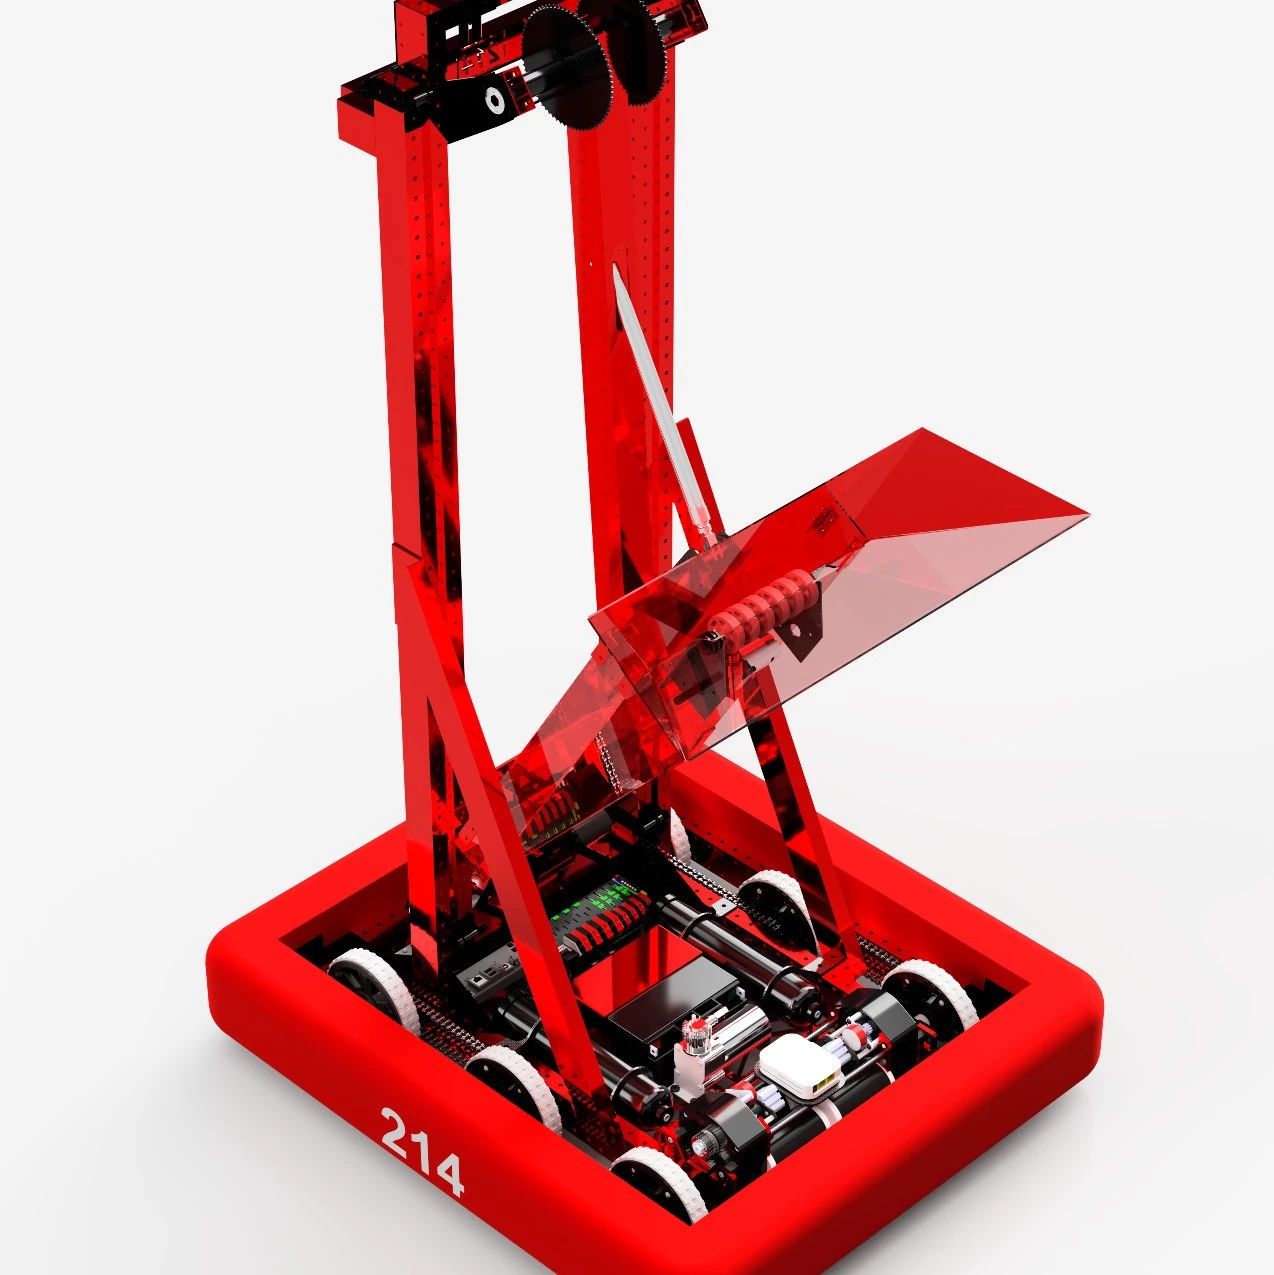 【机器人】Teh Robot机器人车3D模型图纸 STEP格式